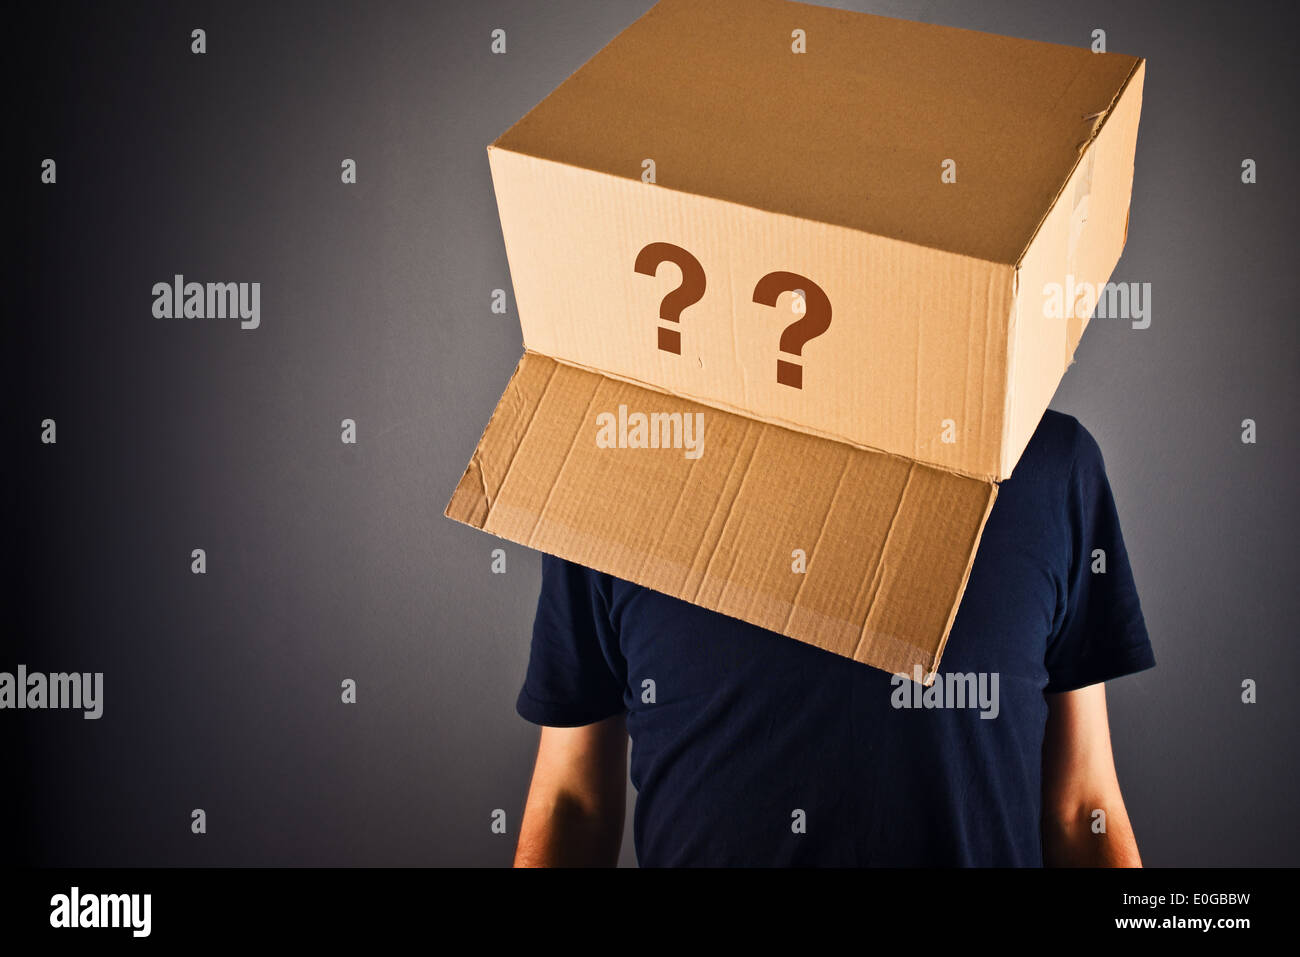 Mann mit Karton auf seinem Kopf in Frage zu stellen. Fragen ohne Antworten. Stockfoto